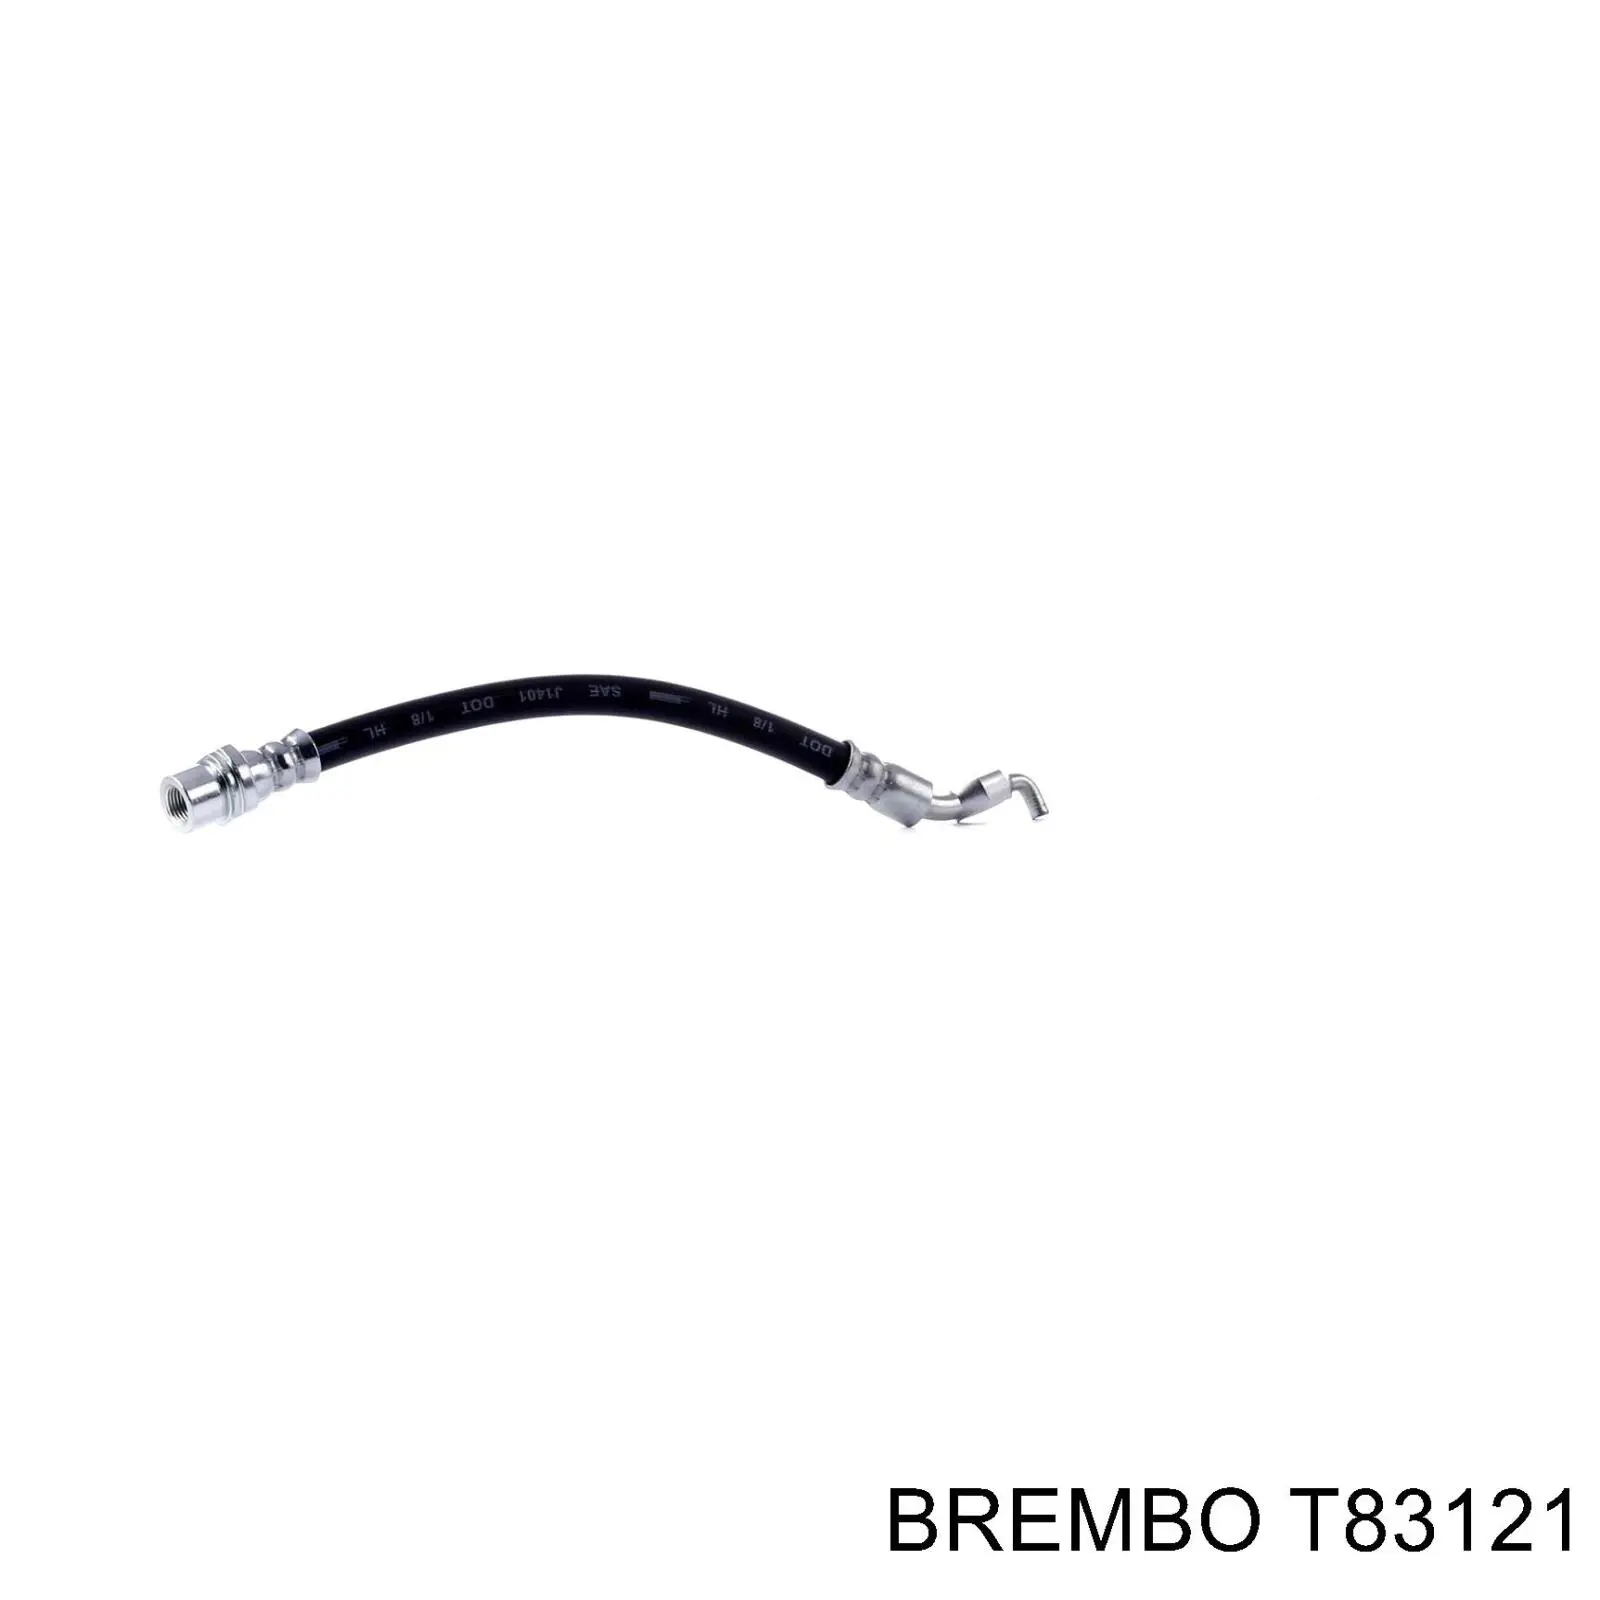 T83121 Brembo шланг тормозной передний